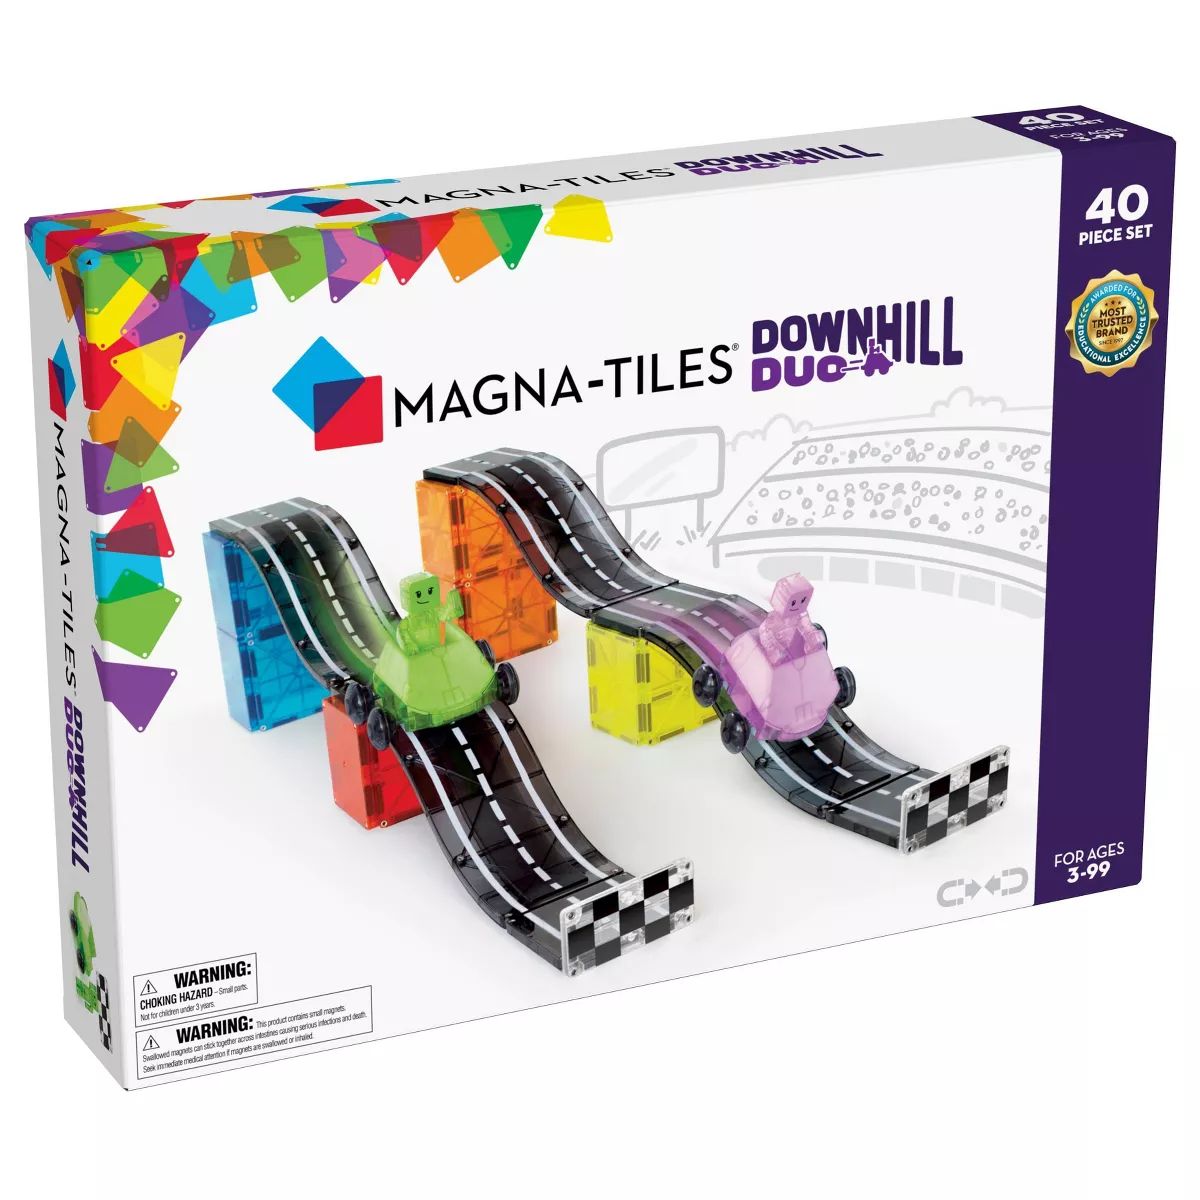 MAGNA-TILES Downhill Duo | Target